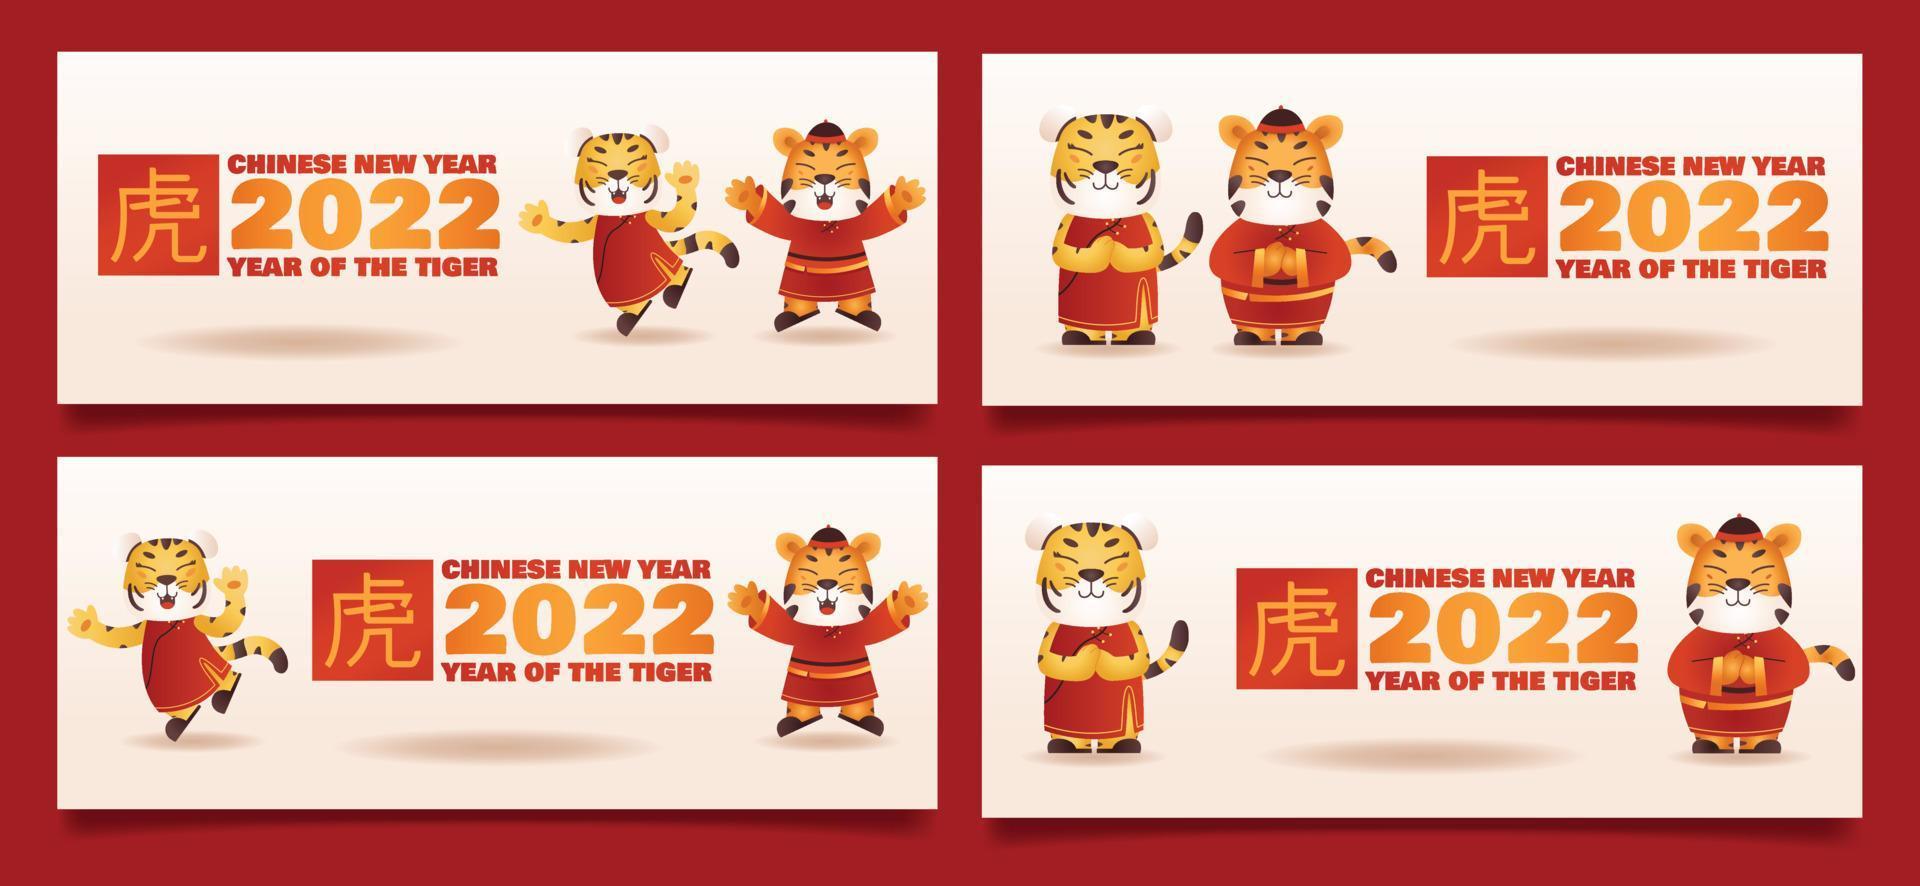 2022 chinesische neujahrsgrußkarte und bannerpaket, jahr des tigers. mit zwei niedlichen Tiger-Maskottchen-Charakteren und Sternzeichen-Stempel. vektor